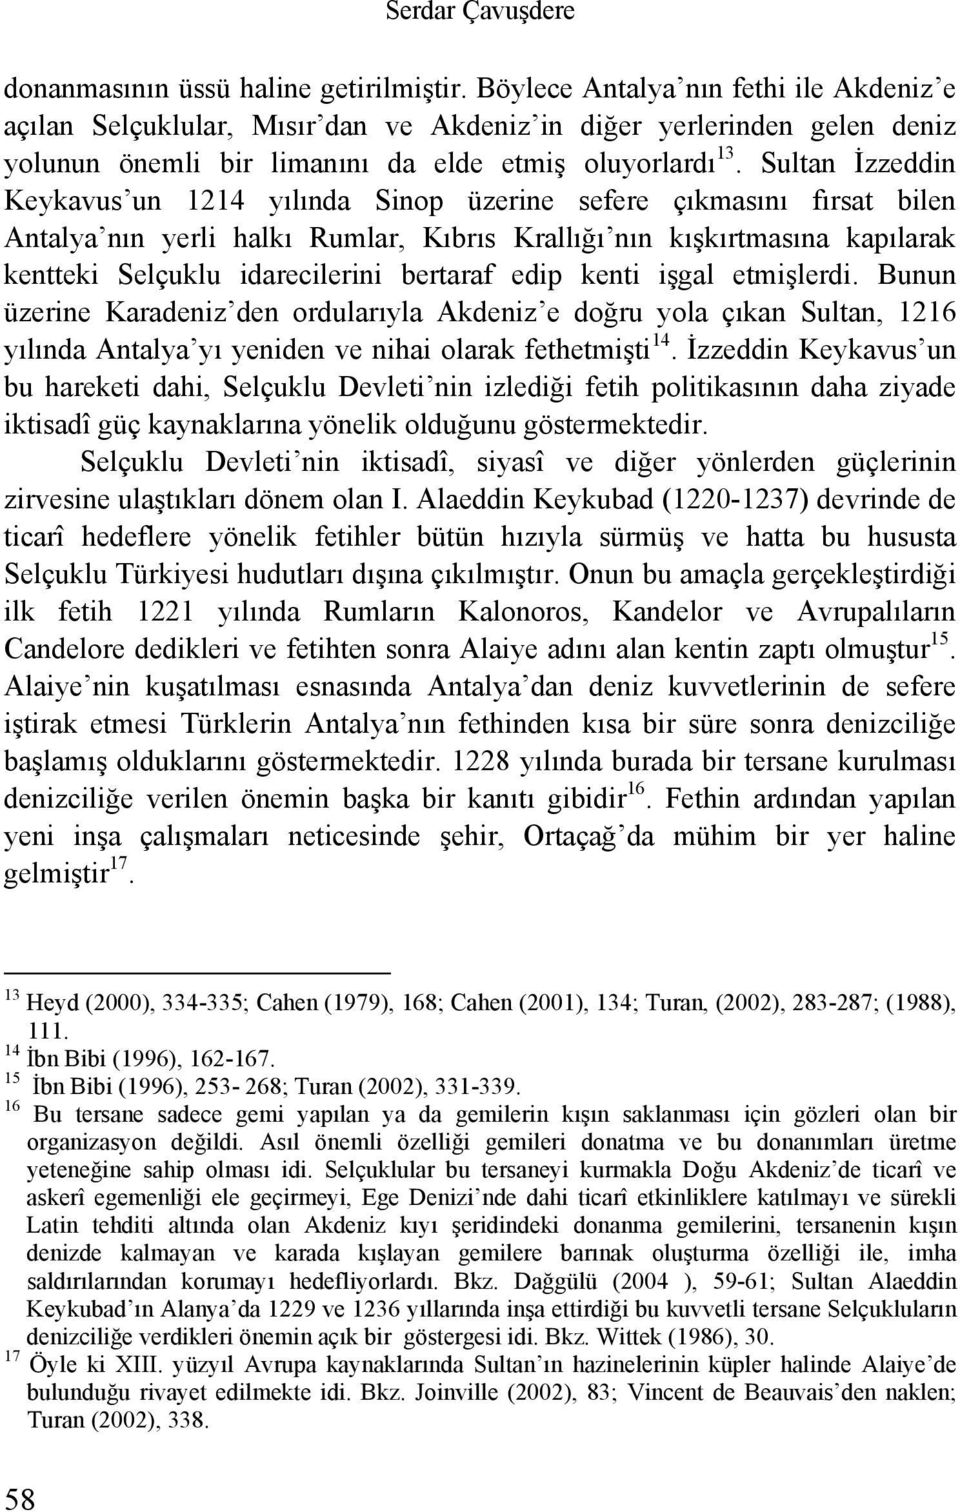 Sultan İzzeddin Keykavus un 1214 yılında Sinop üzerine sefere çıkmasını fırsat bilen Antalya nın yerli halkı Rumlar, Kıbrıs Krallığı nın kışkırtmasına kapılarak kentteki Selçuklu idarecilerini